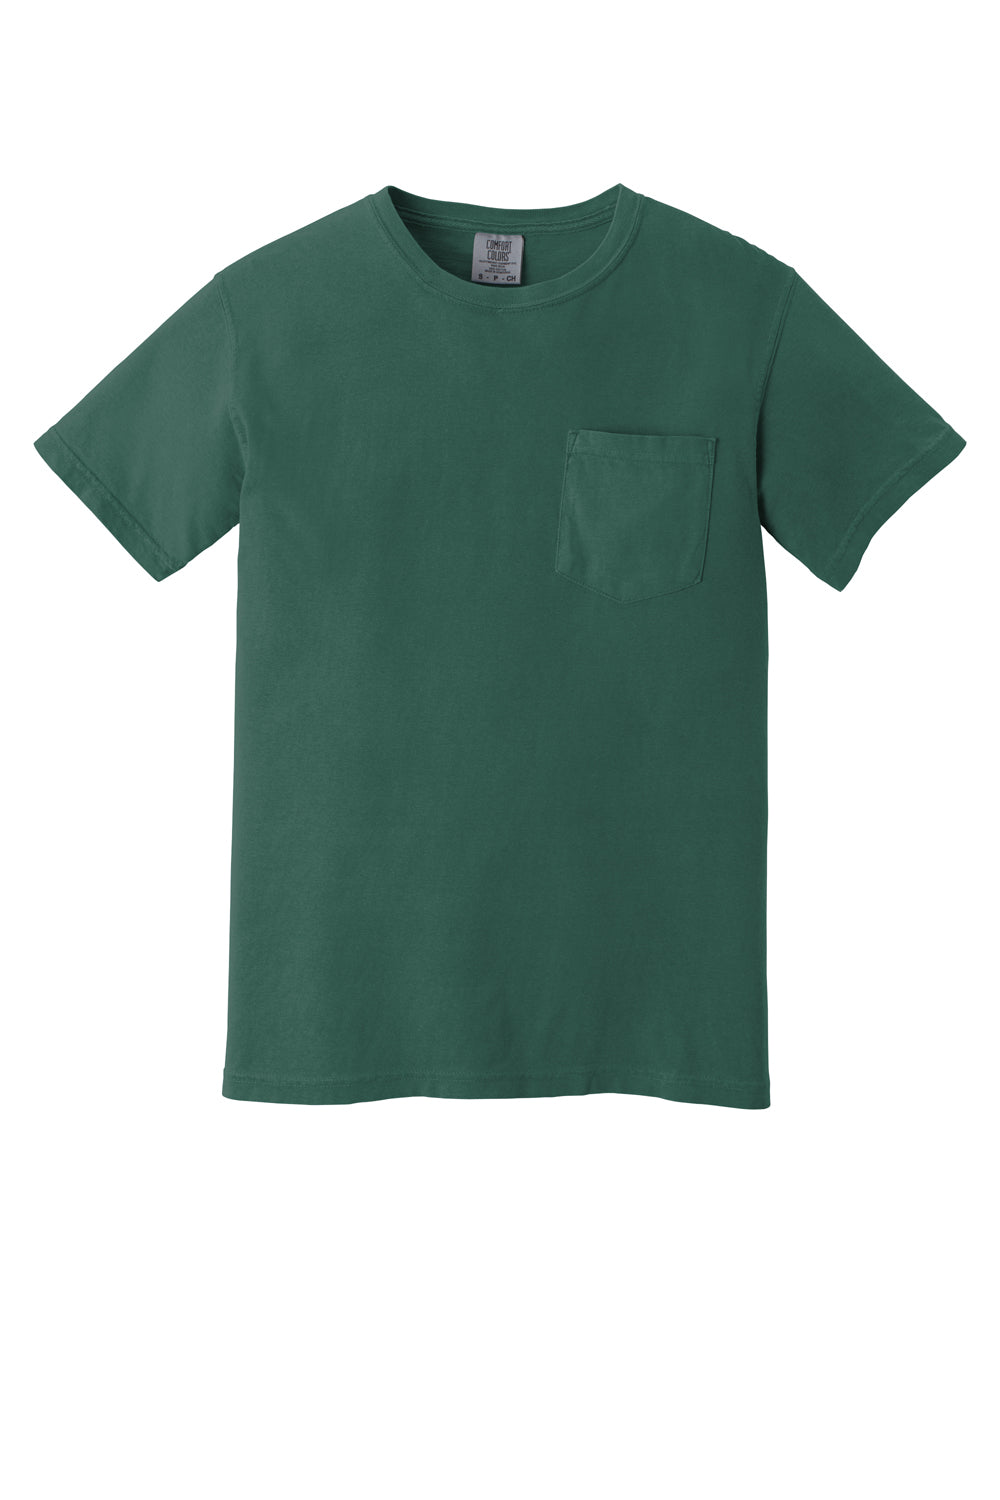 Comfort Colors Mens Short Sleeve Crewneck T-Shirt w/ Pocket Emerald Green Flat Front